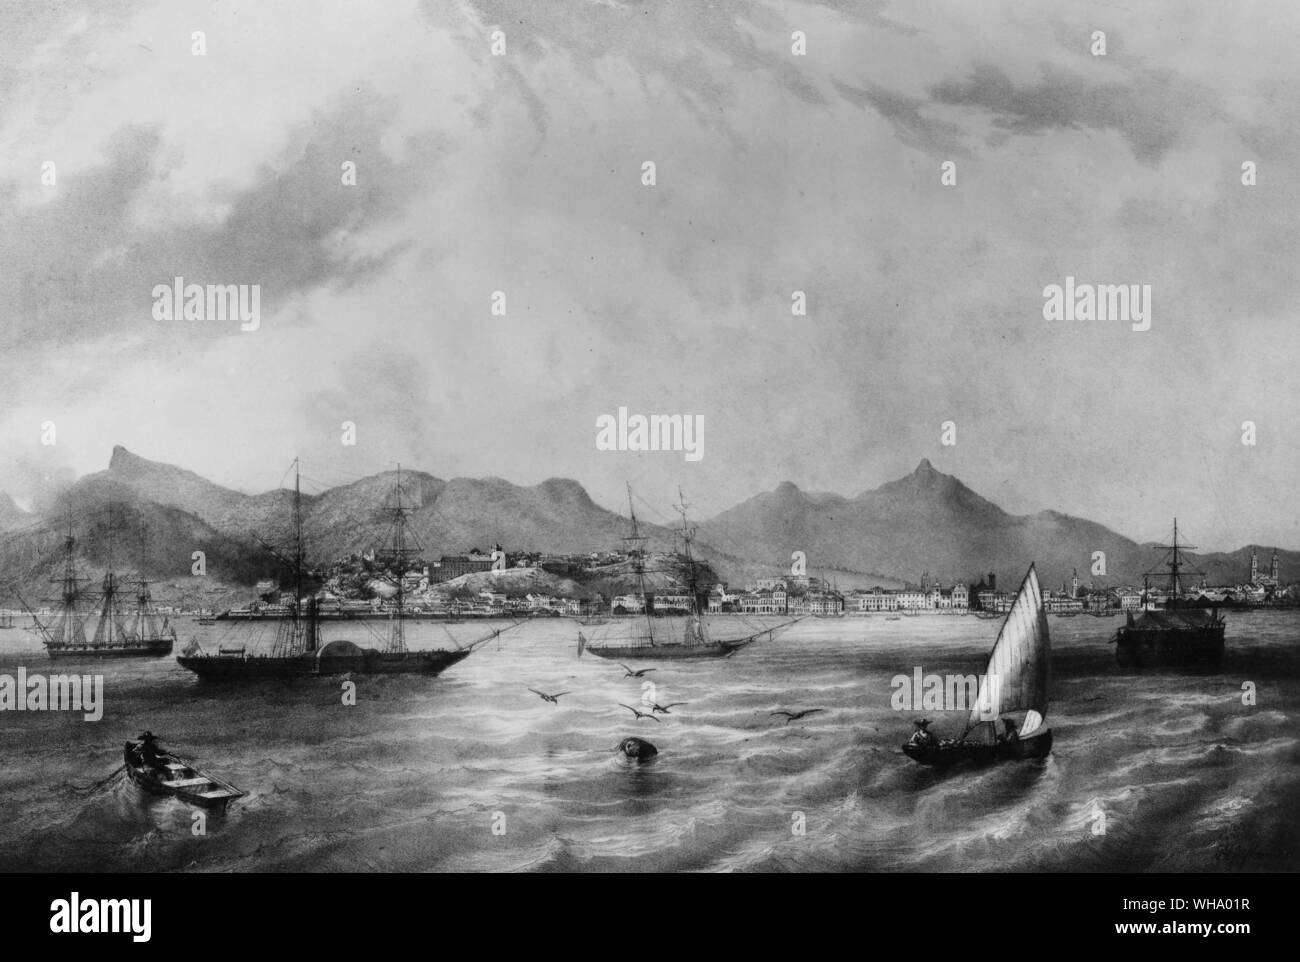 Port de Rio de Janeiro, Brésil ; ville en arrière-plan. Lithogrpah, début du xixe siècle. Banque D'Images